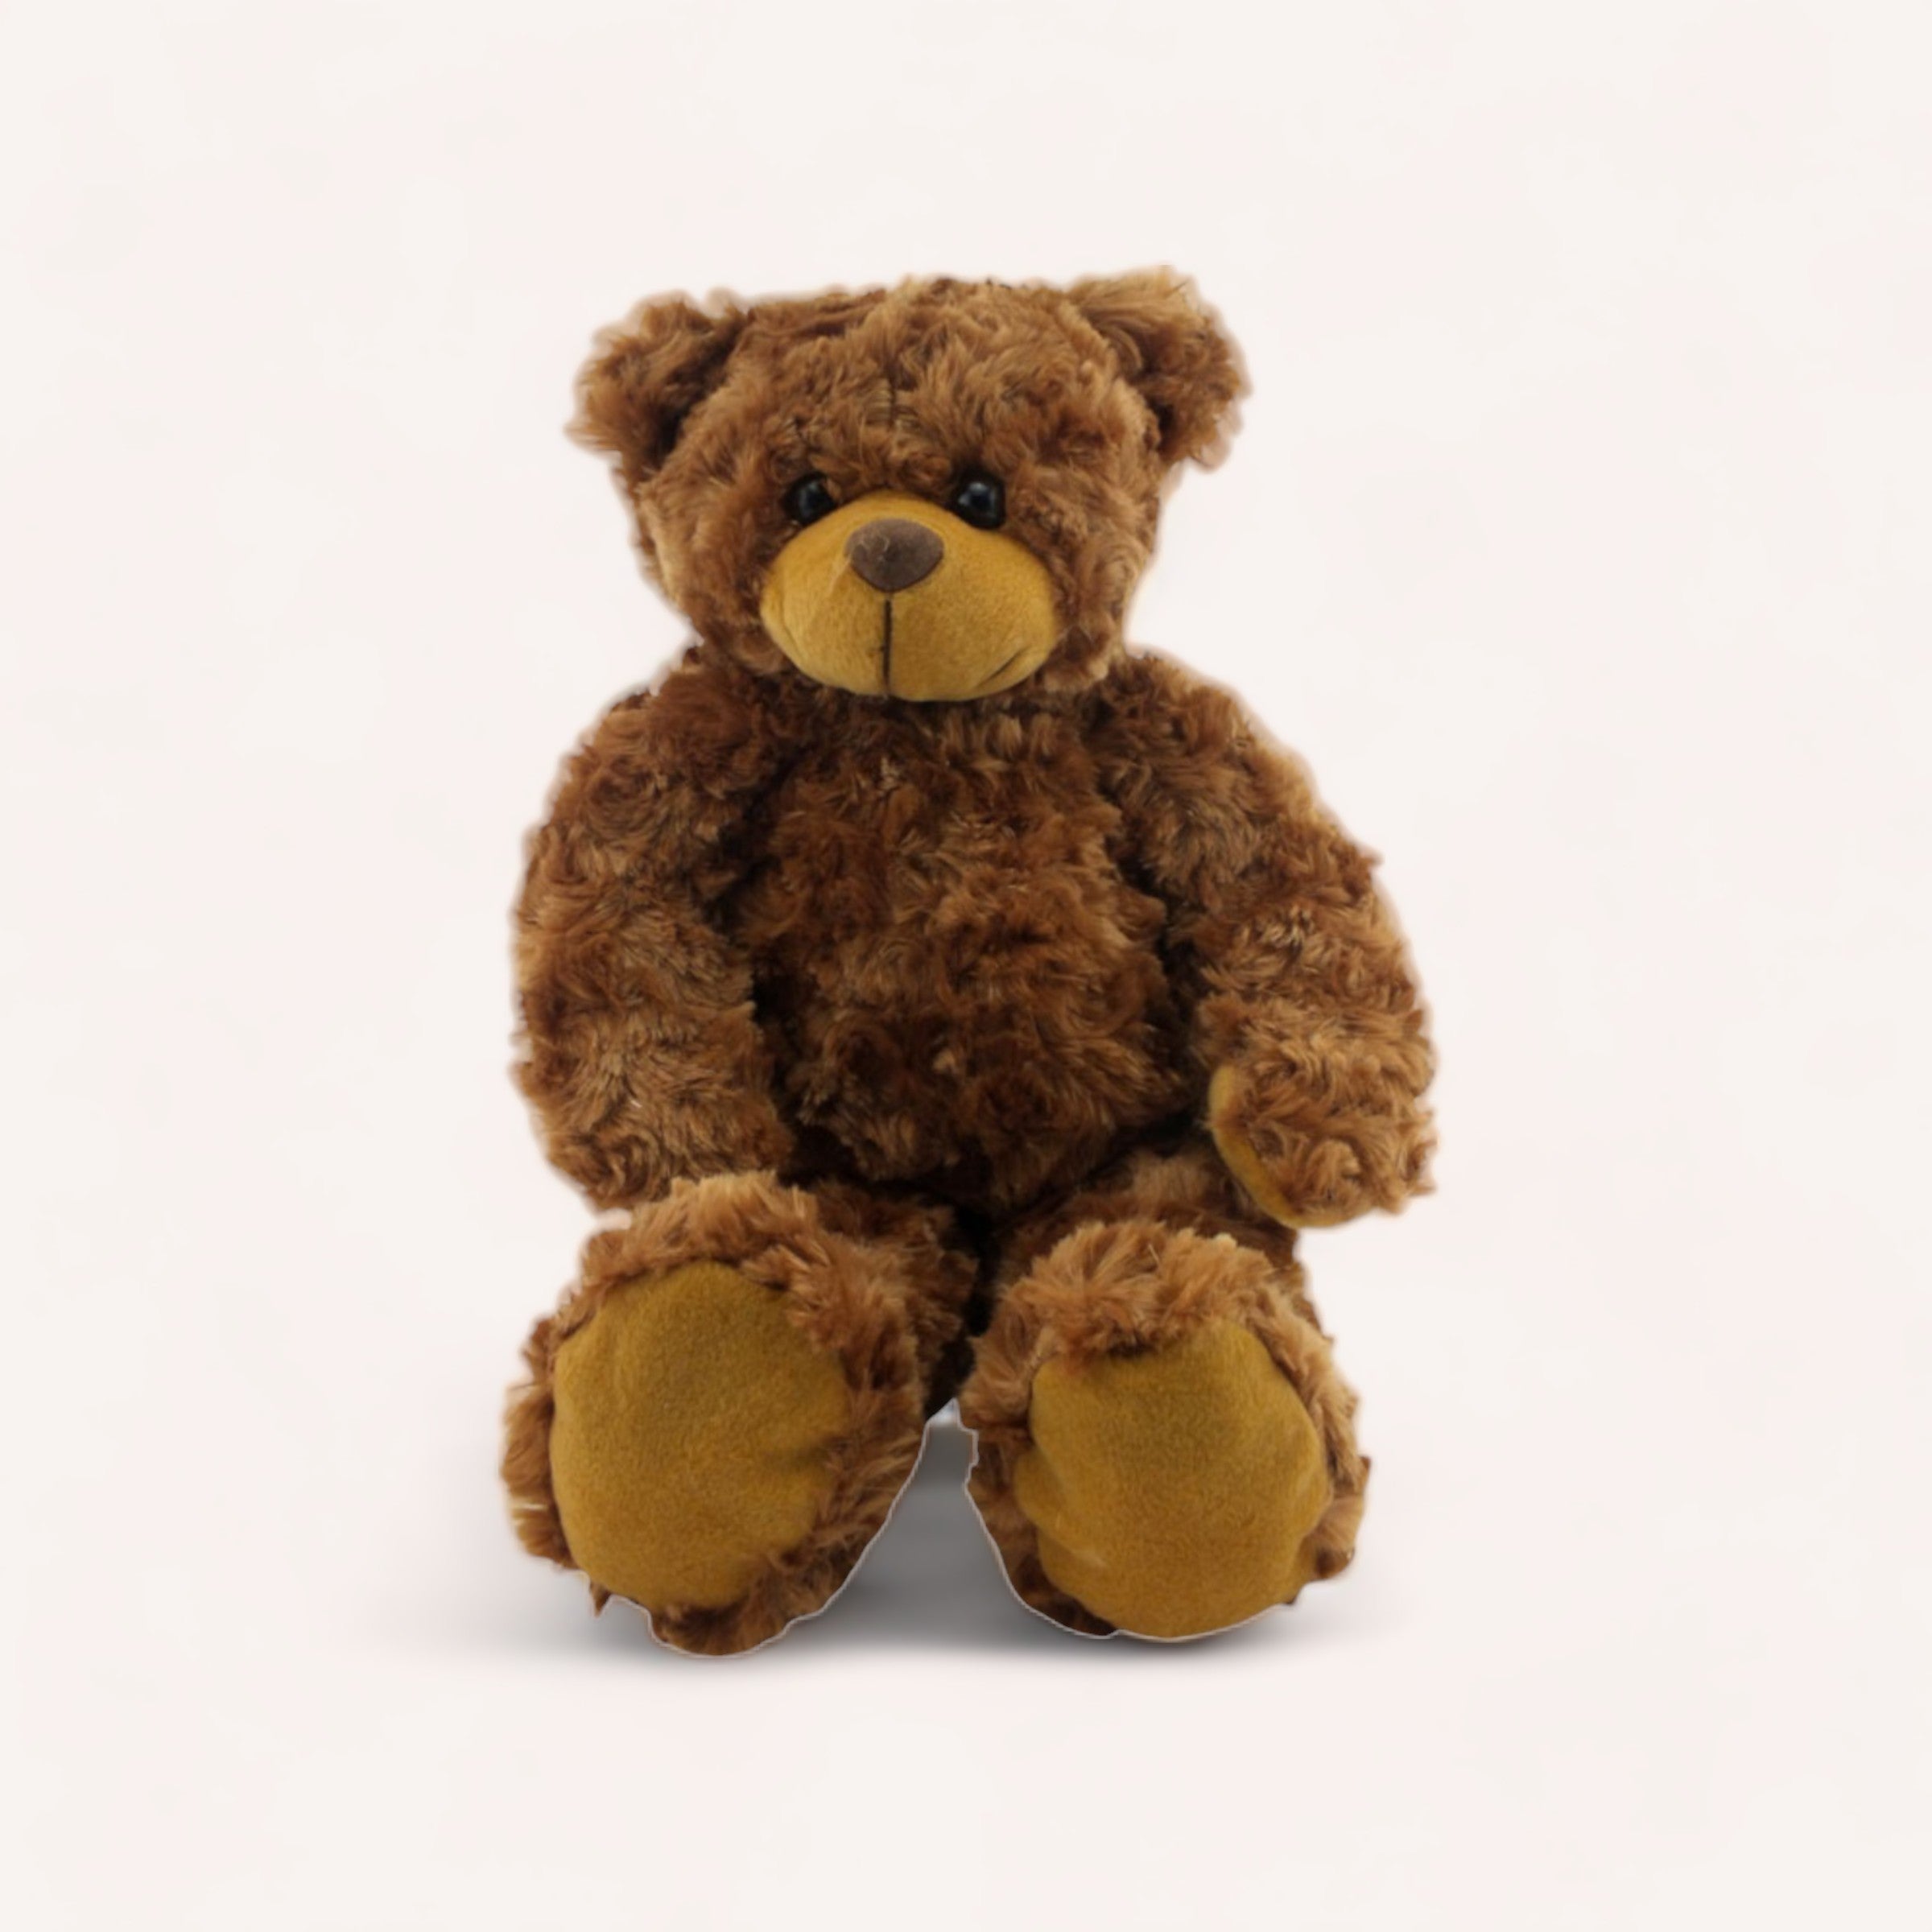 harrison fluffy teddy bear